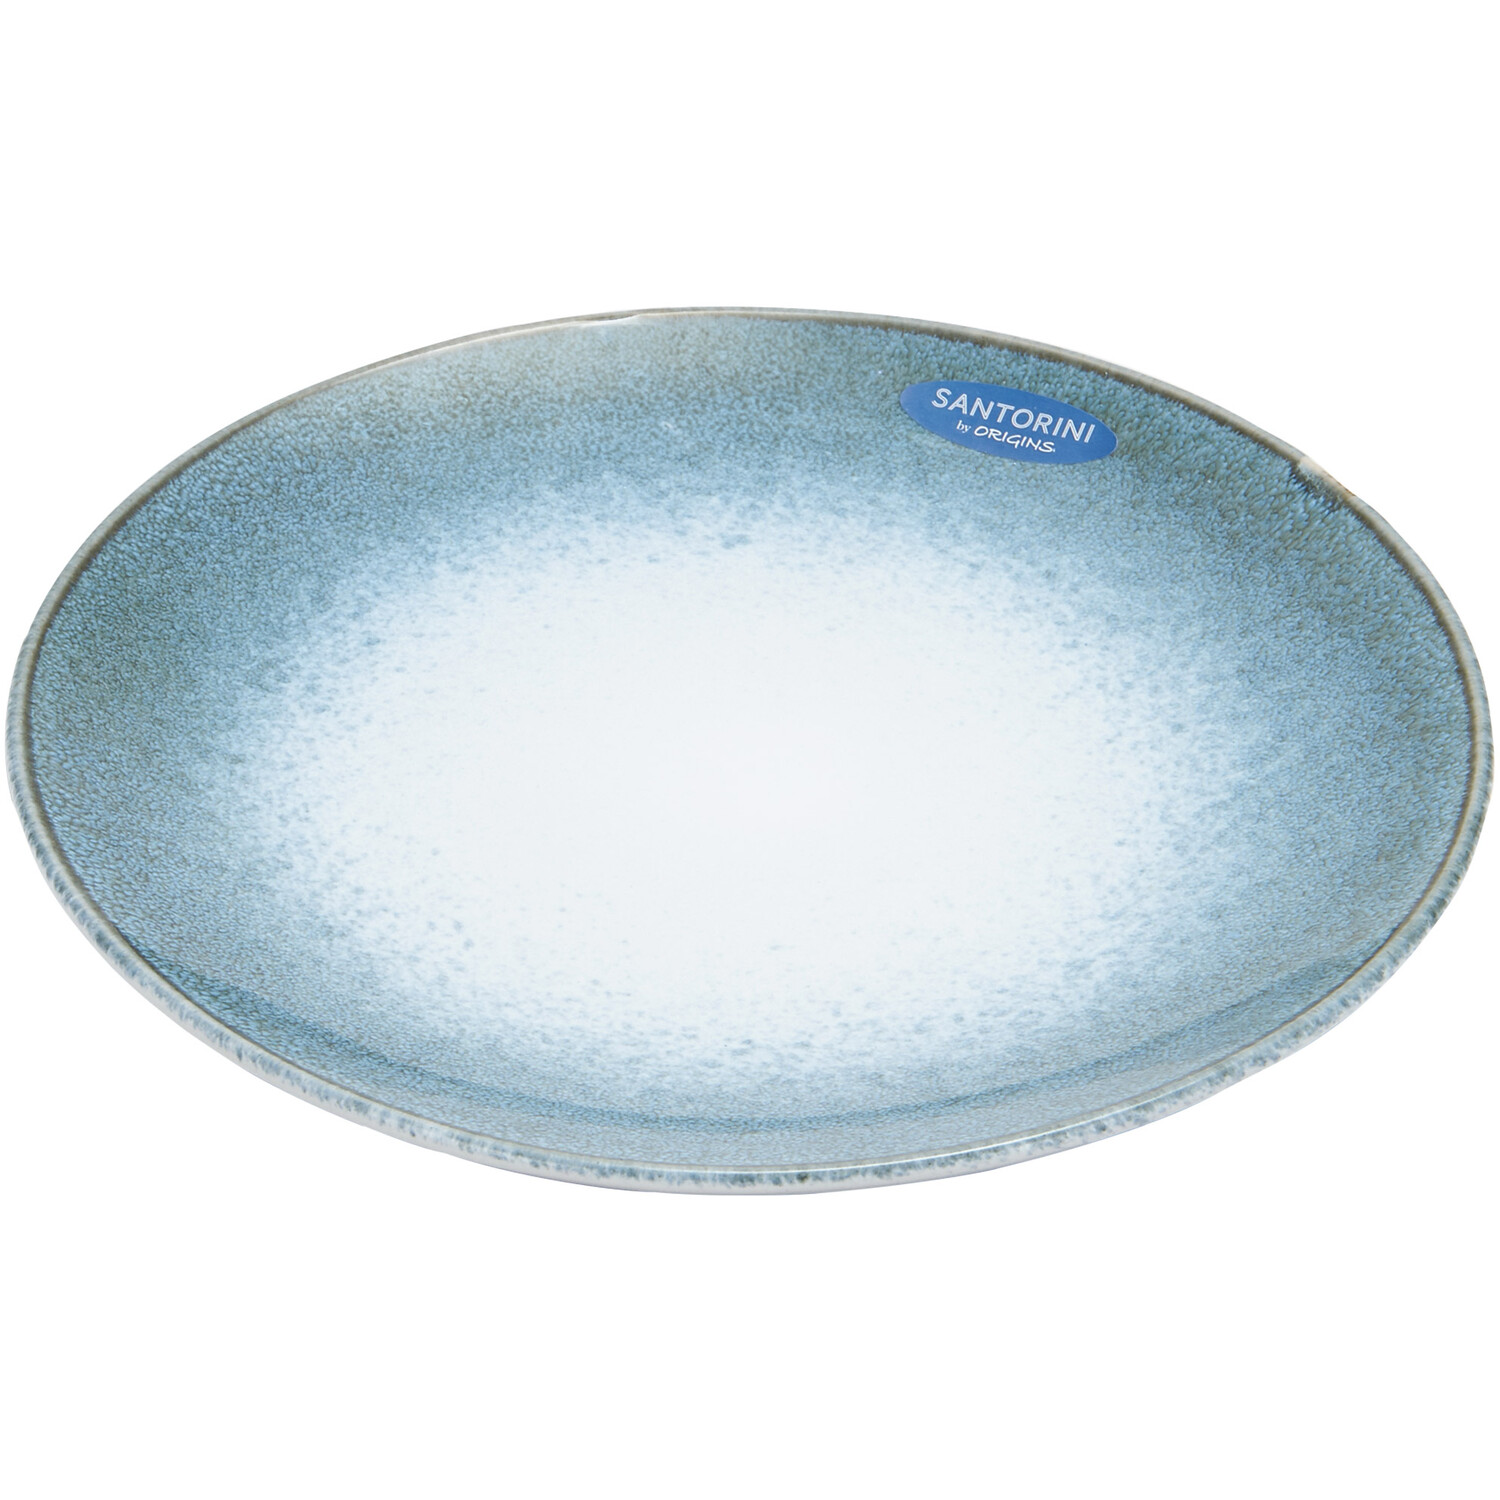 12-Piece Santorini Reactive Glaze Dinner Set - Blue Image 1